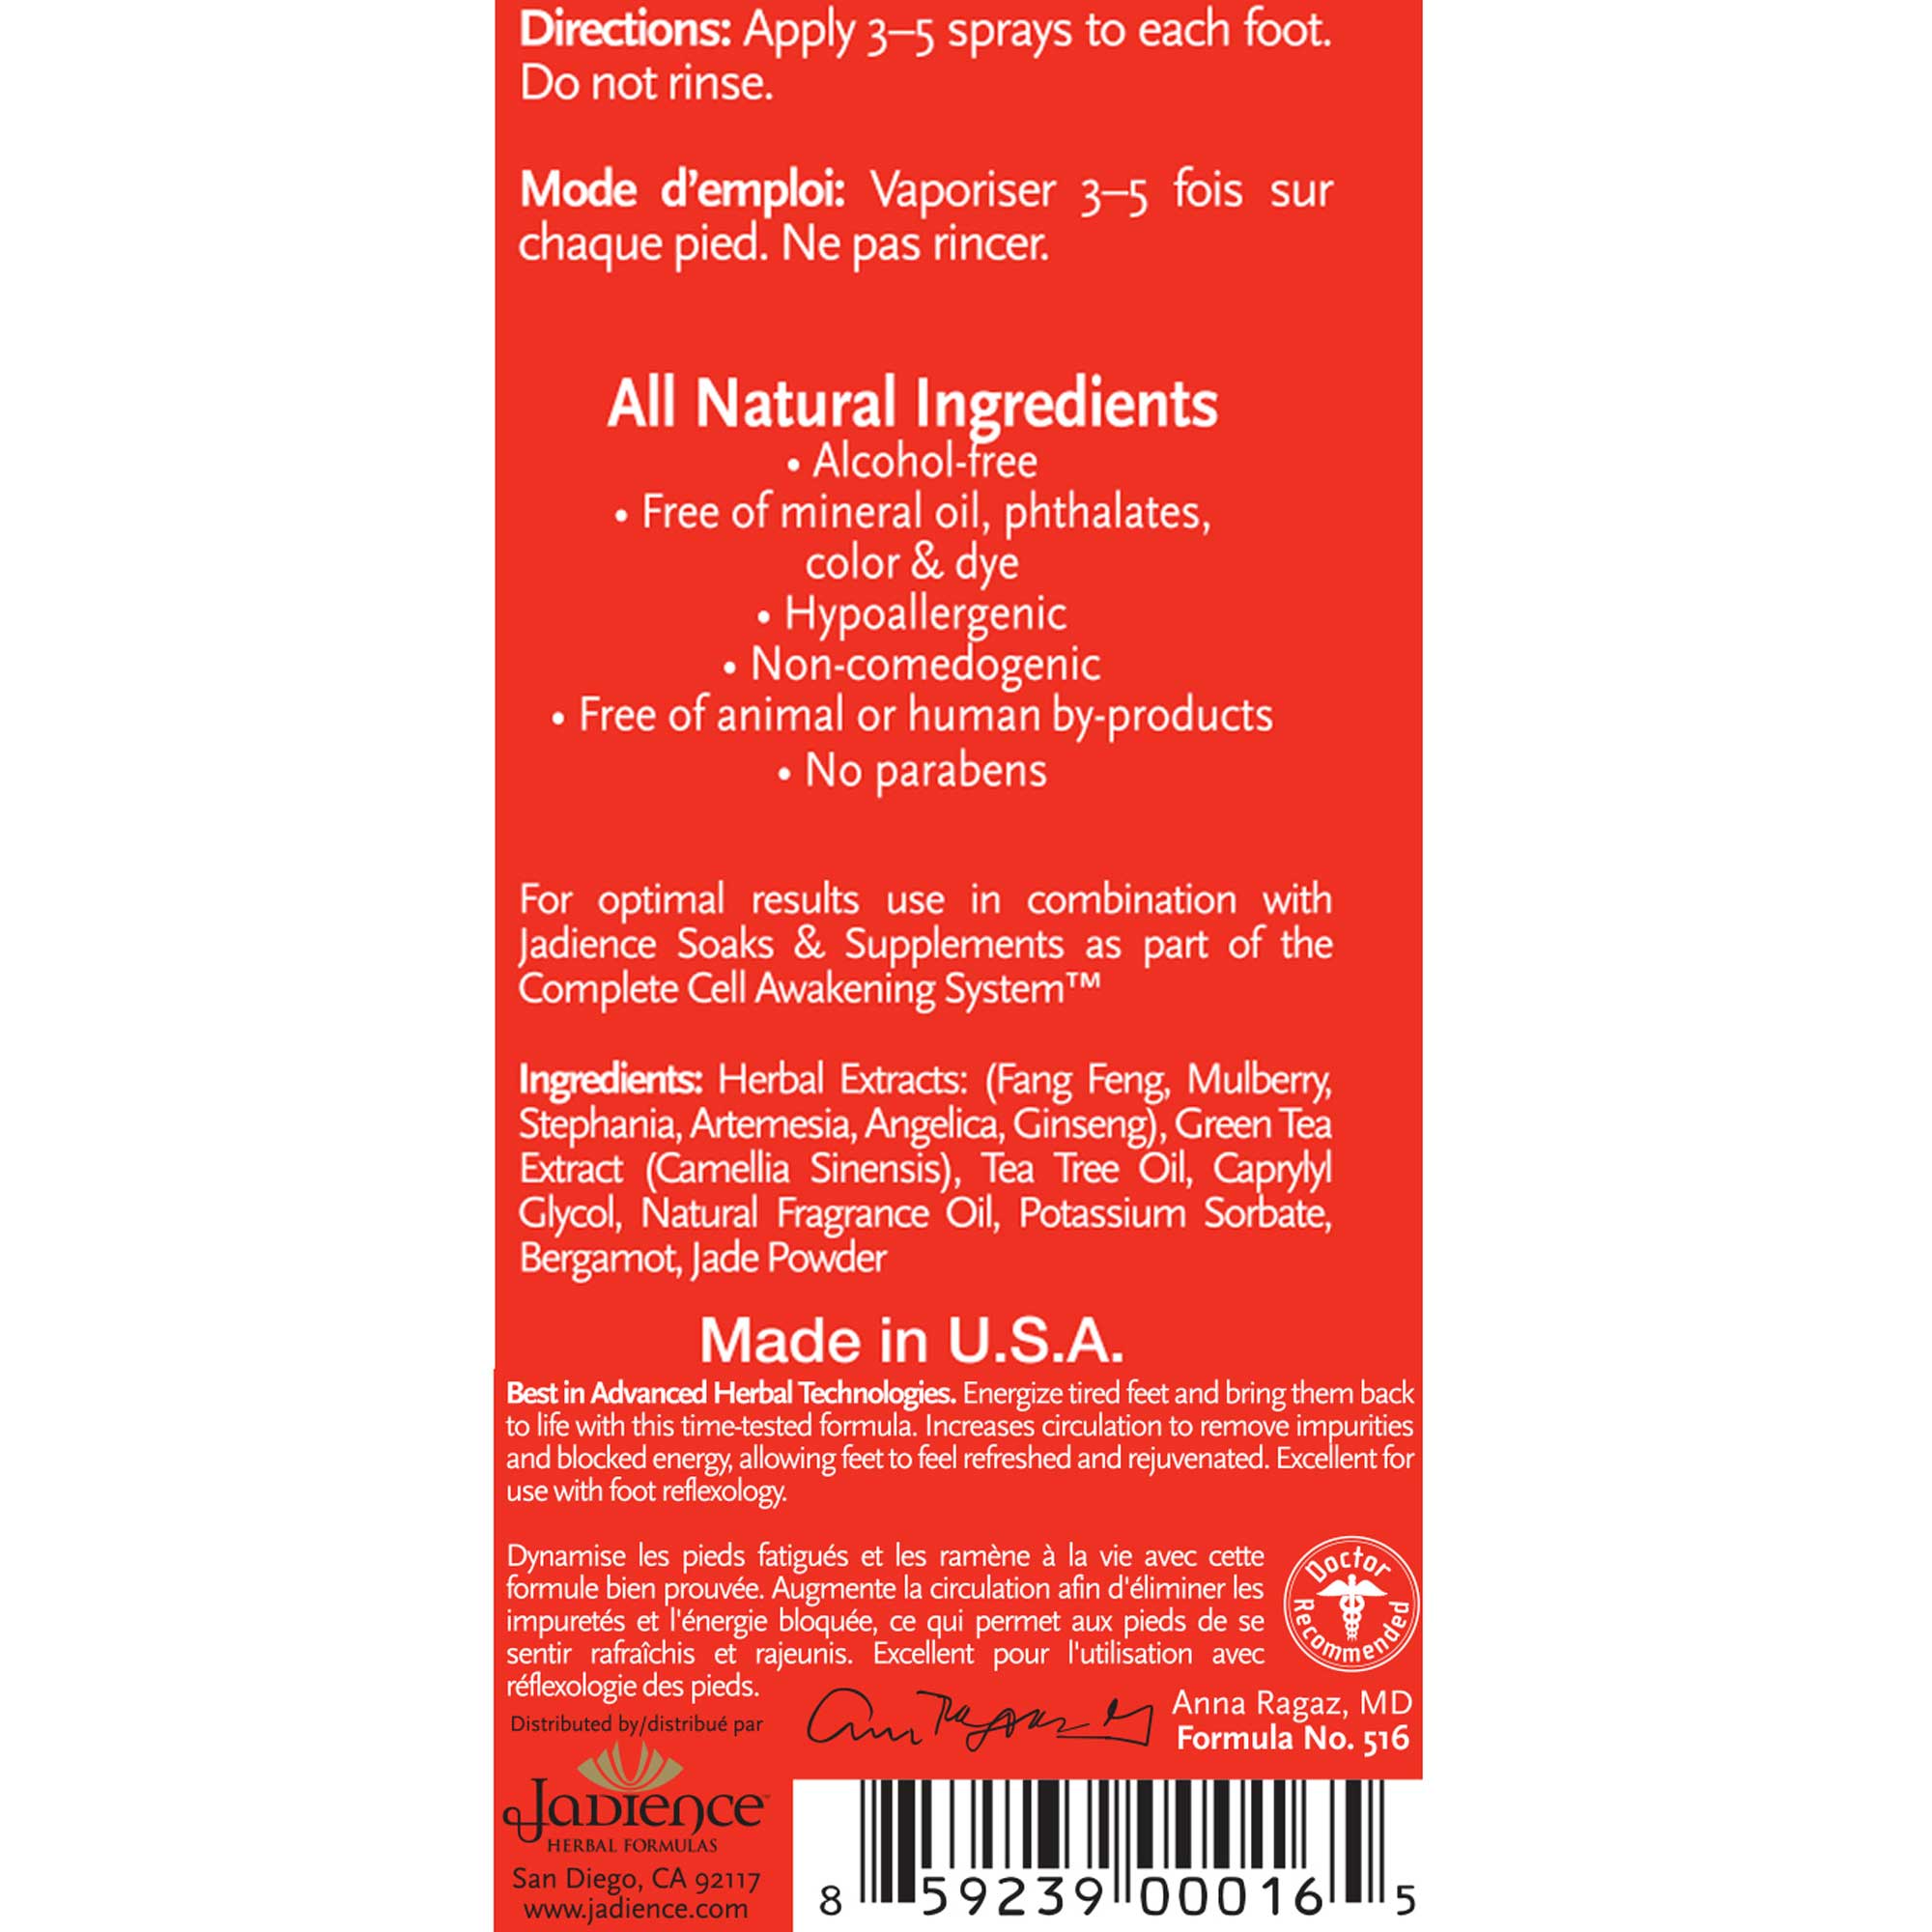 Jadience Herbal Formulas Foot Energy Spray Ingredients